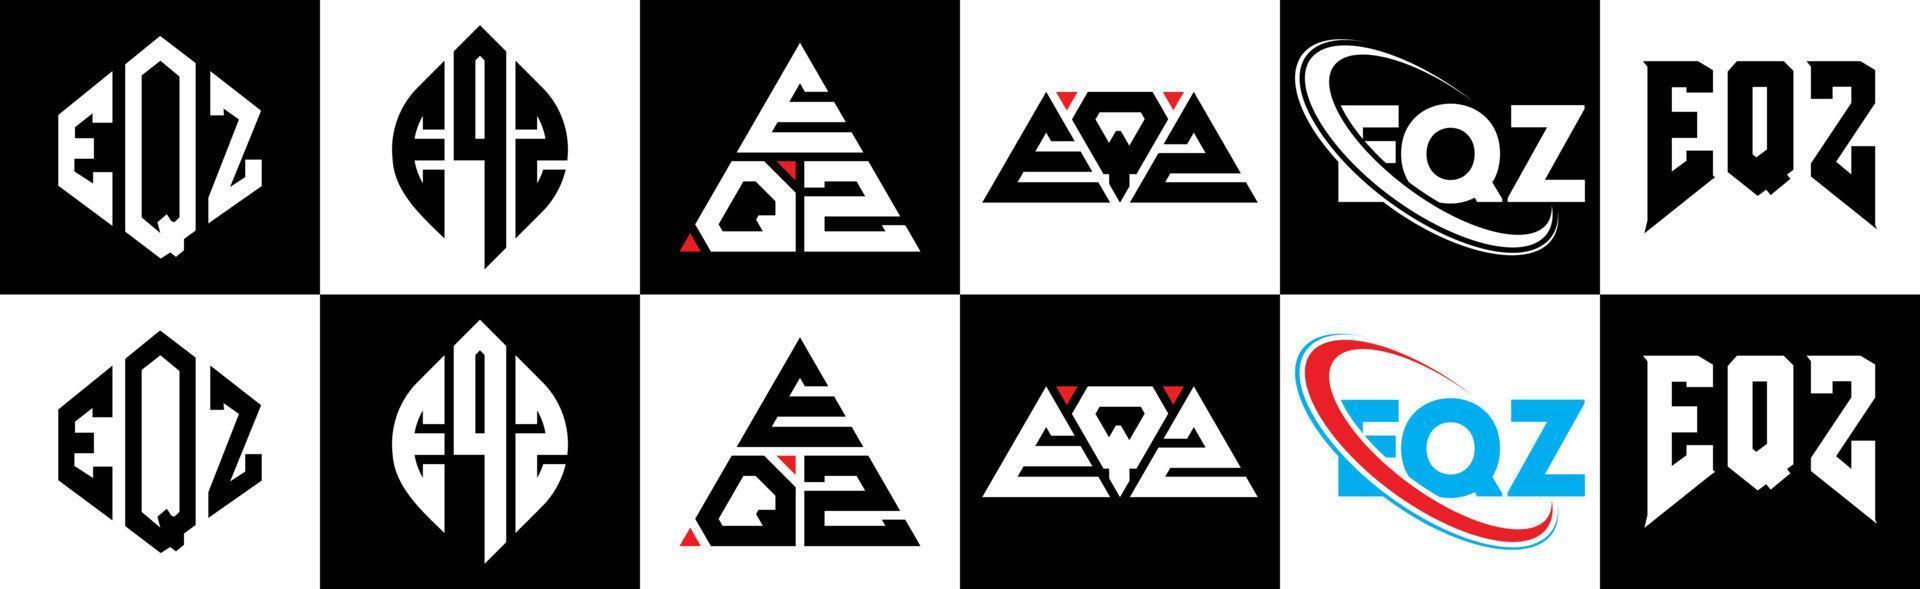 création de logo de lettre eqz en six styles. polygone eqz, cercle, triangle, hexagone, style plat et simple avec logo de lettre de variation de couleur noir et blanc dans un plan de travail. logo minimaliste et classique eqz vecteur